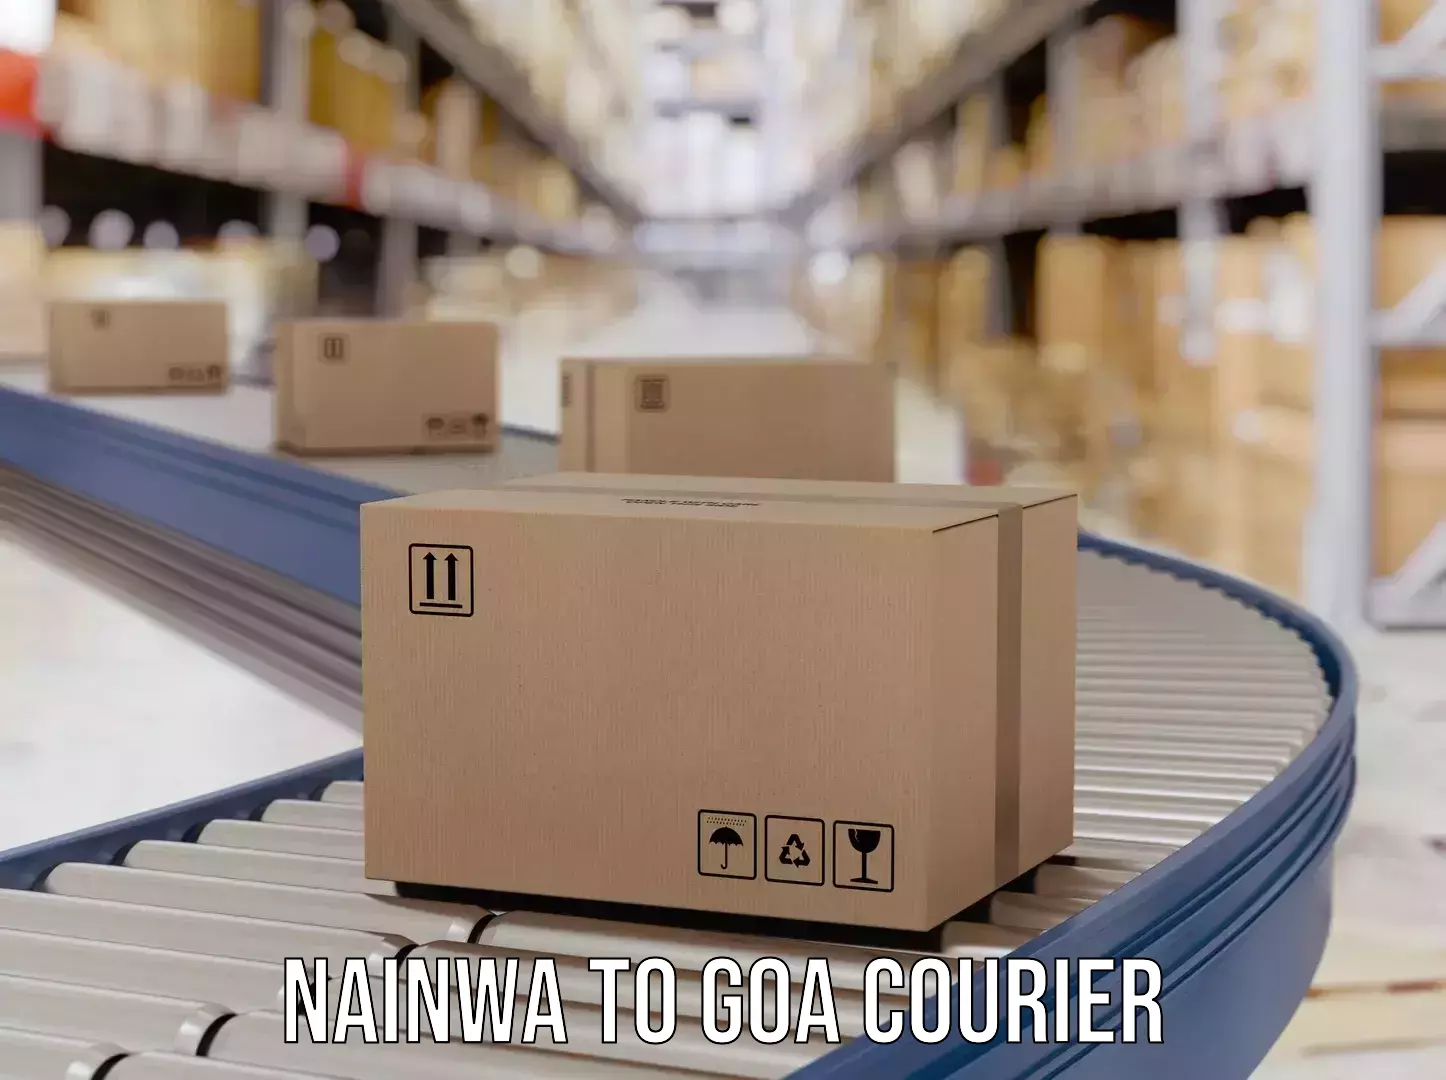 Express courier facilities Nainwa to Bardez